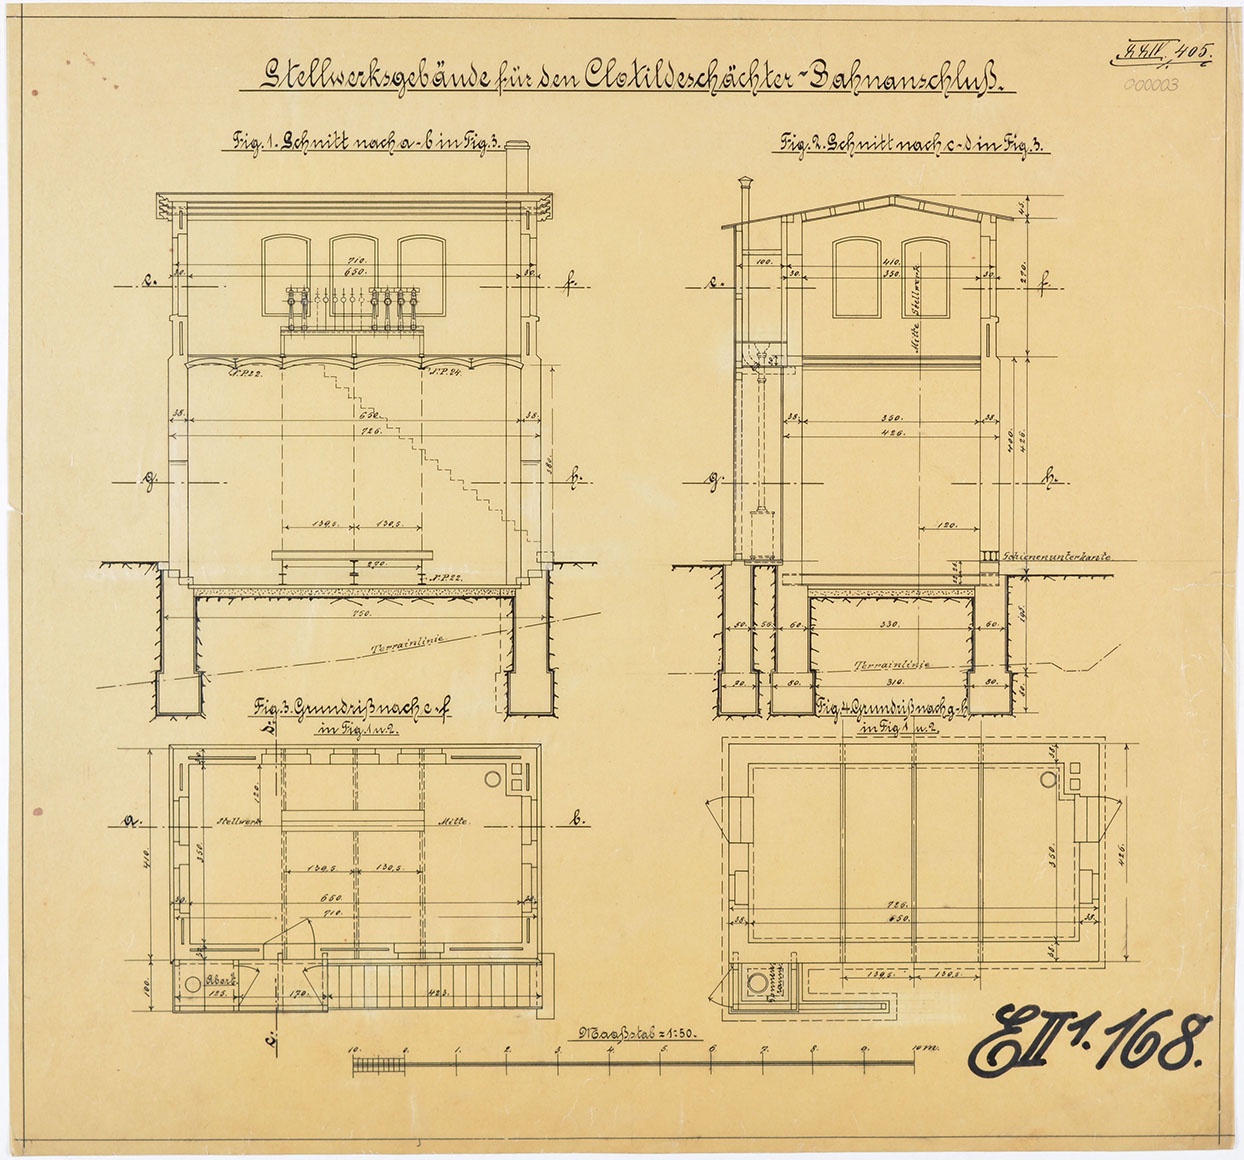 Stellwerksgebäude für den Clotildeschächter-Bahnanschluss (Mansfeld-Museum im Humboldt-Schloss CC BY-NC-SA)